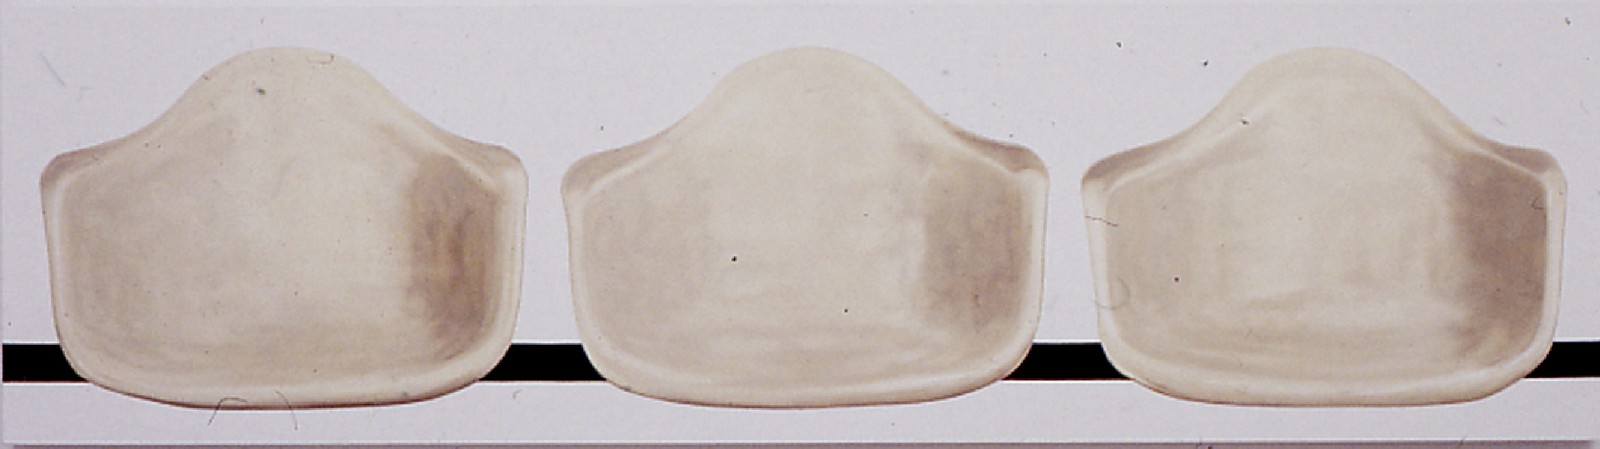 Doug Wada, Eames Shells
2002, Oil on Linen